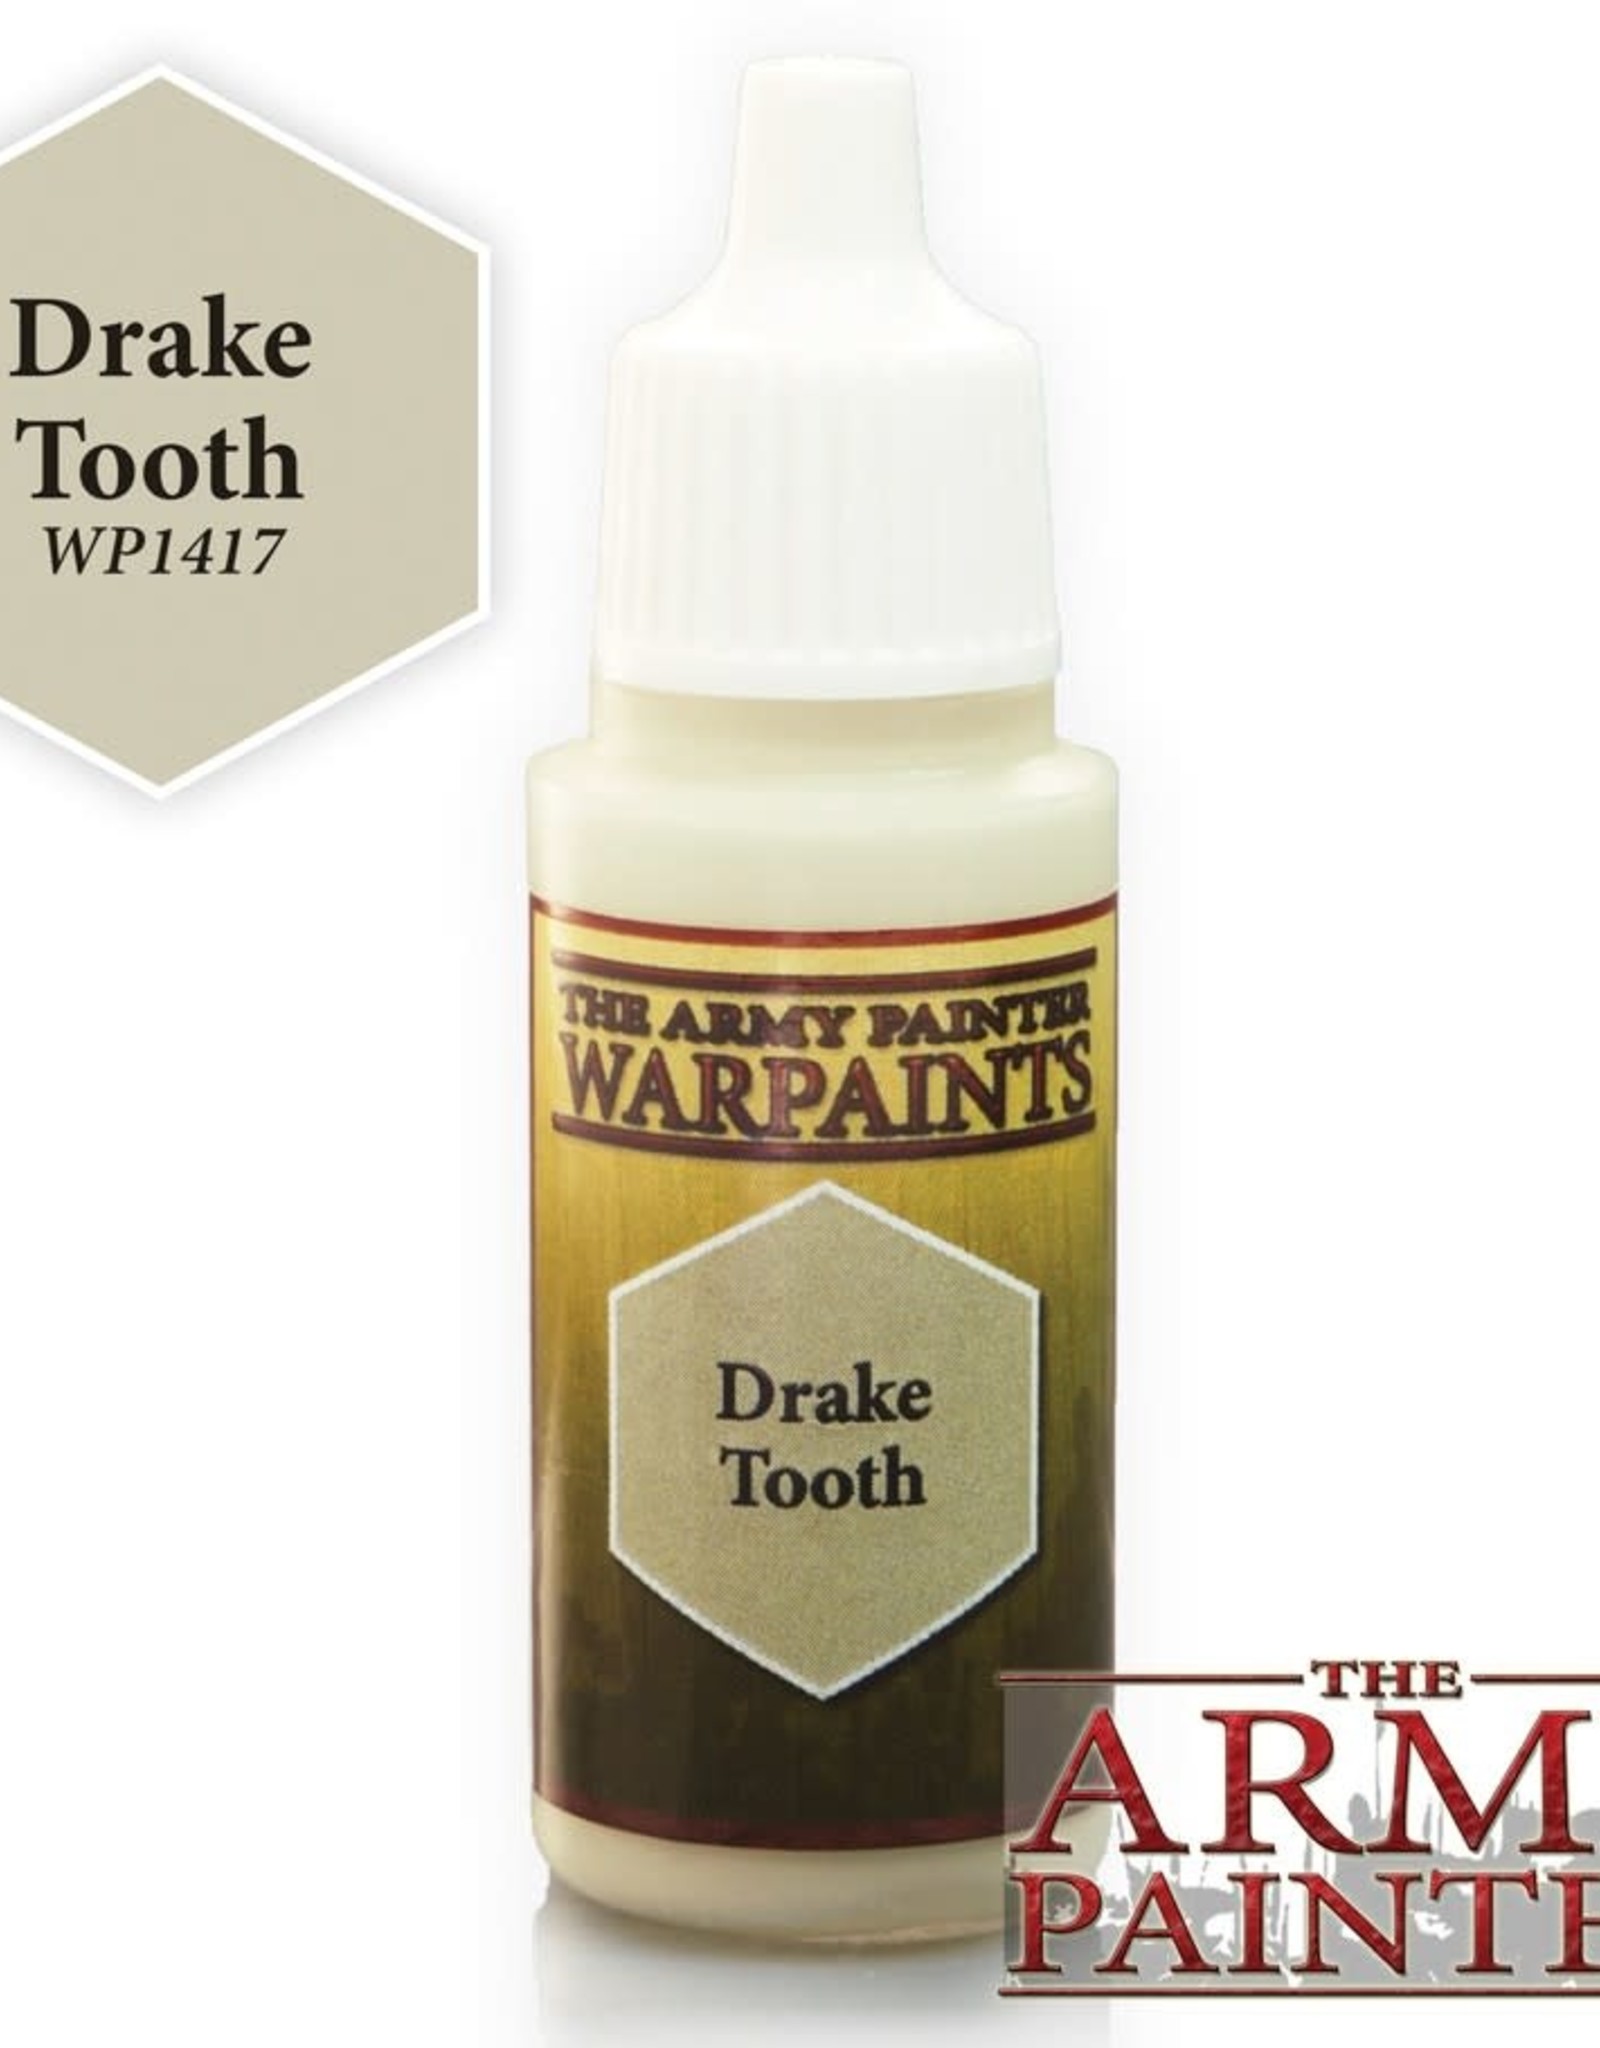 Warpaints: Drake tooth